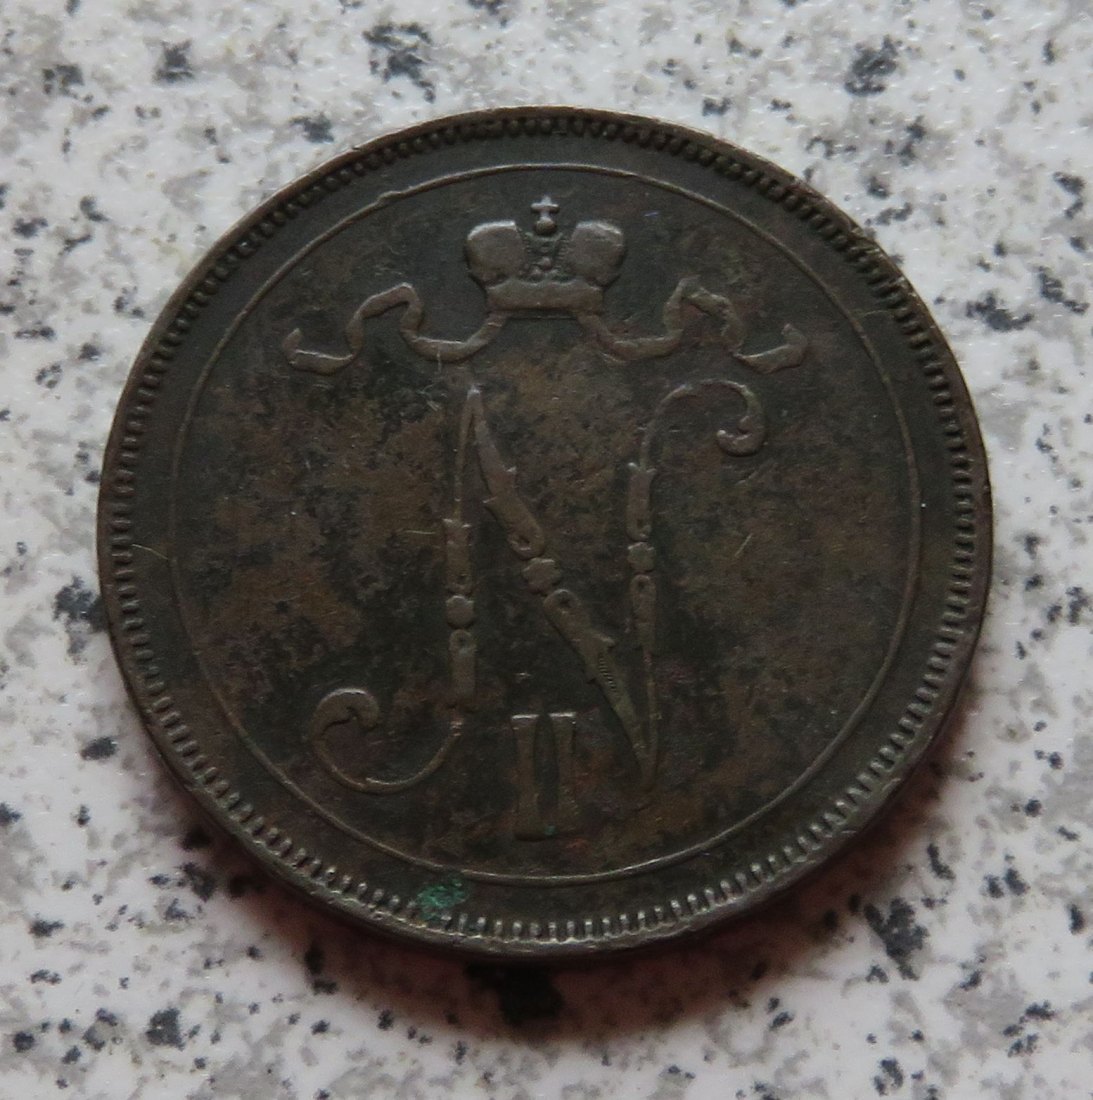  Finnland 10 Penniä 1895   